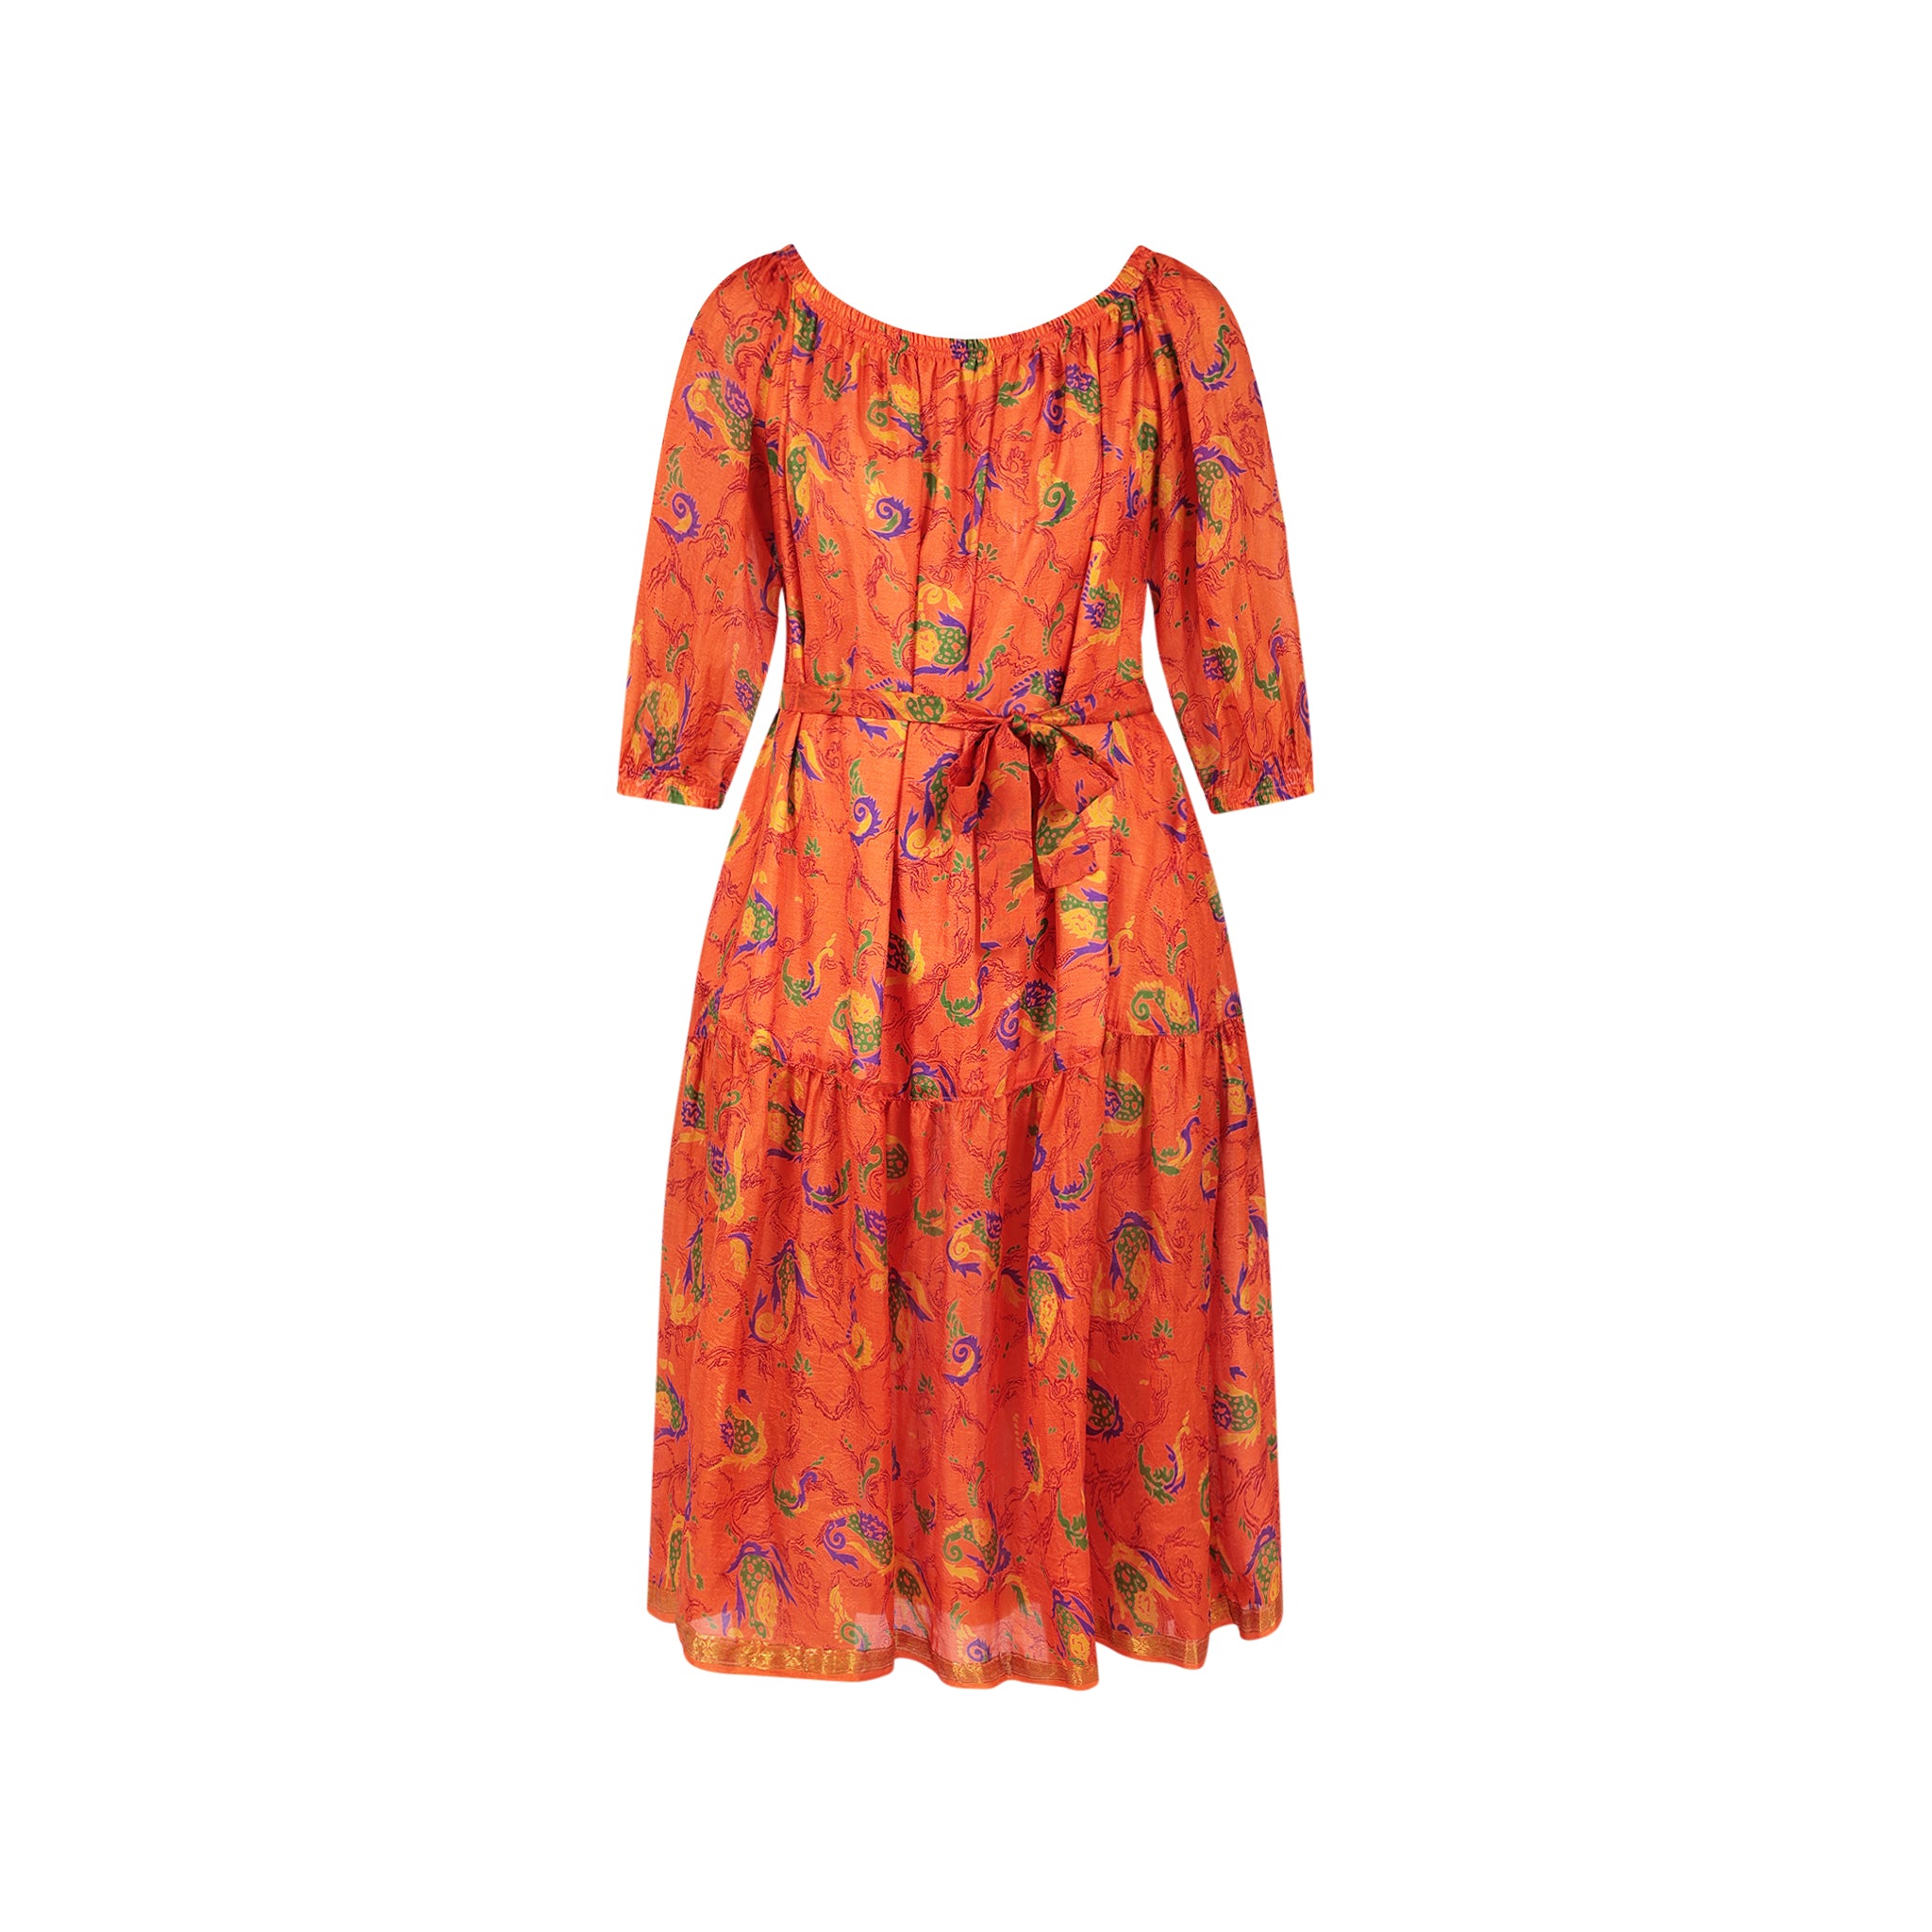 Ausus - Vintage Silk Sari Spritz Orange Abstract Floral Print Maxi Dress invisible mannequin